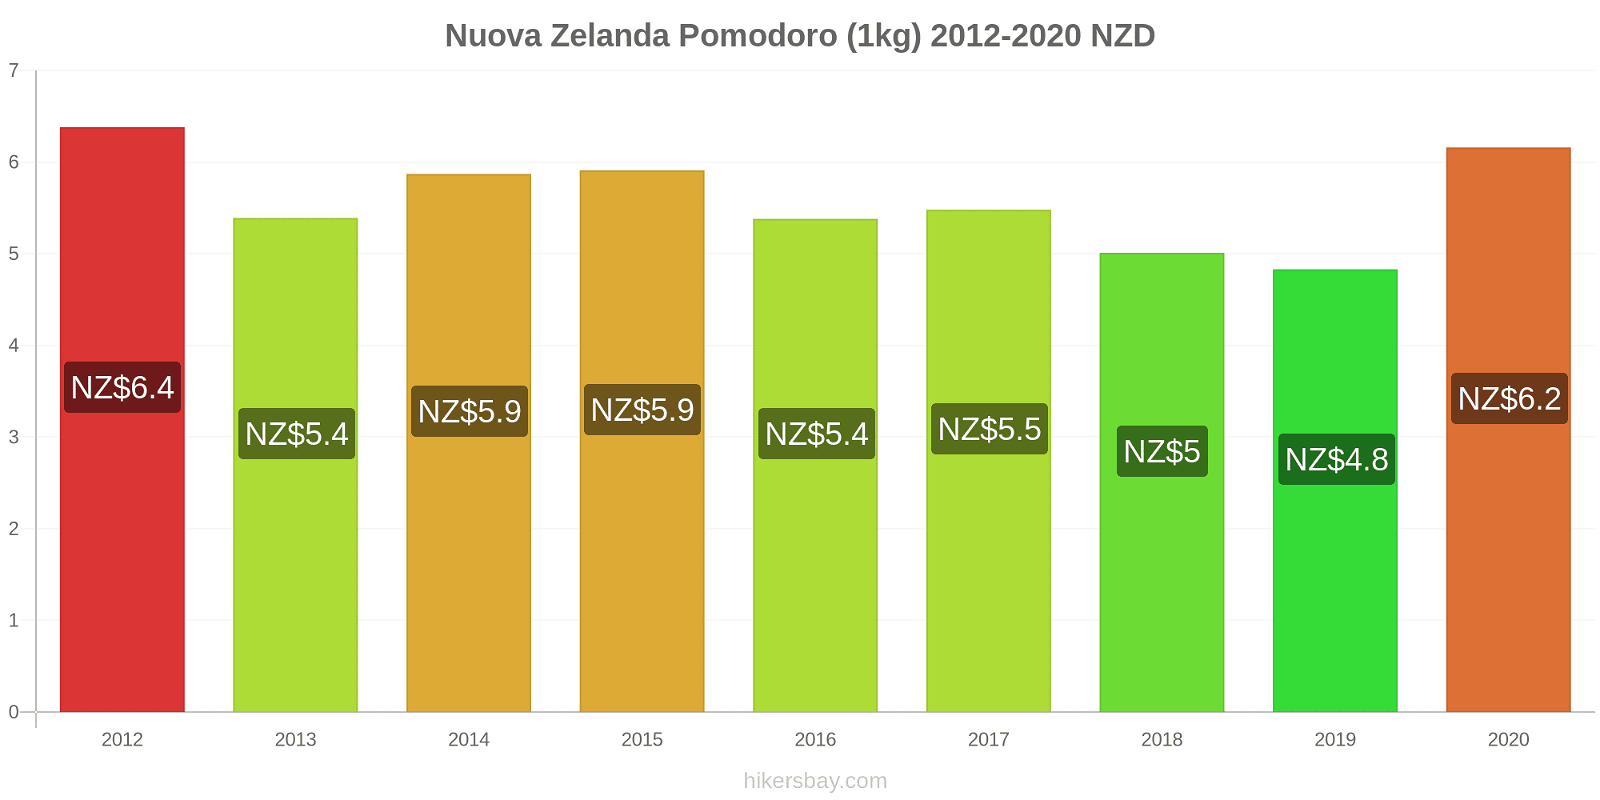 Nuova Zelanda variazioni di prezzo Pomodoro (1kg) hikersbay.com